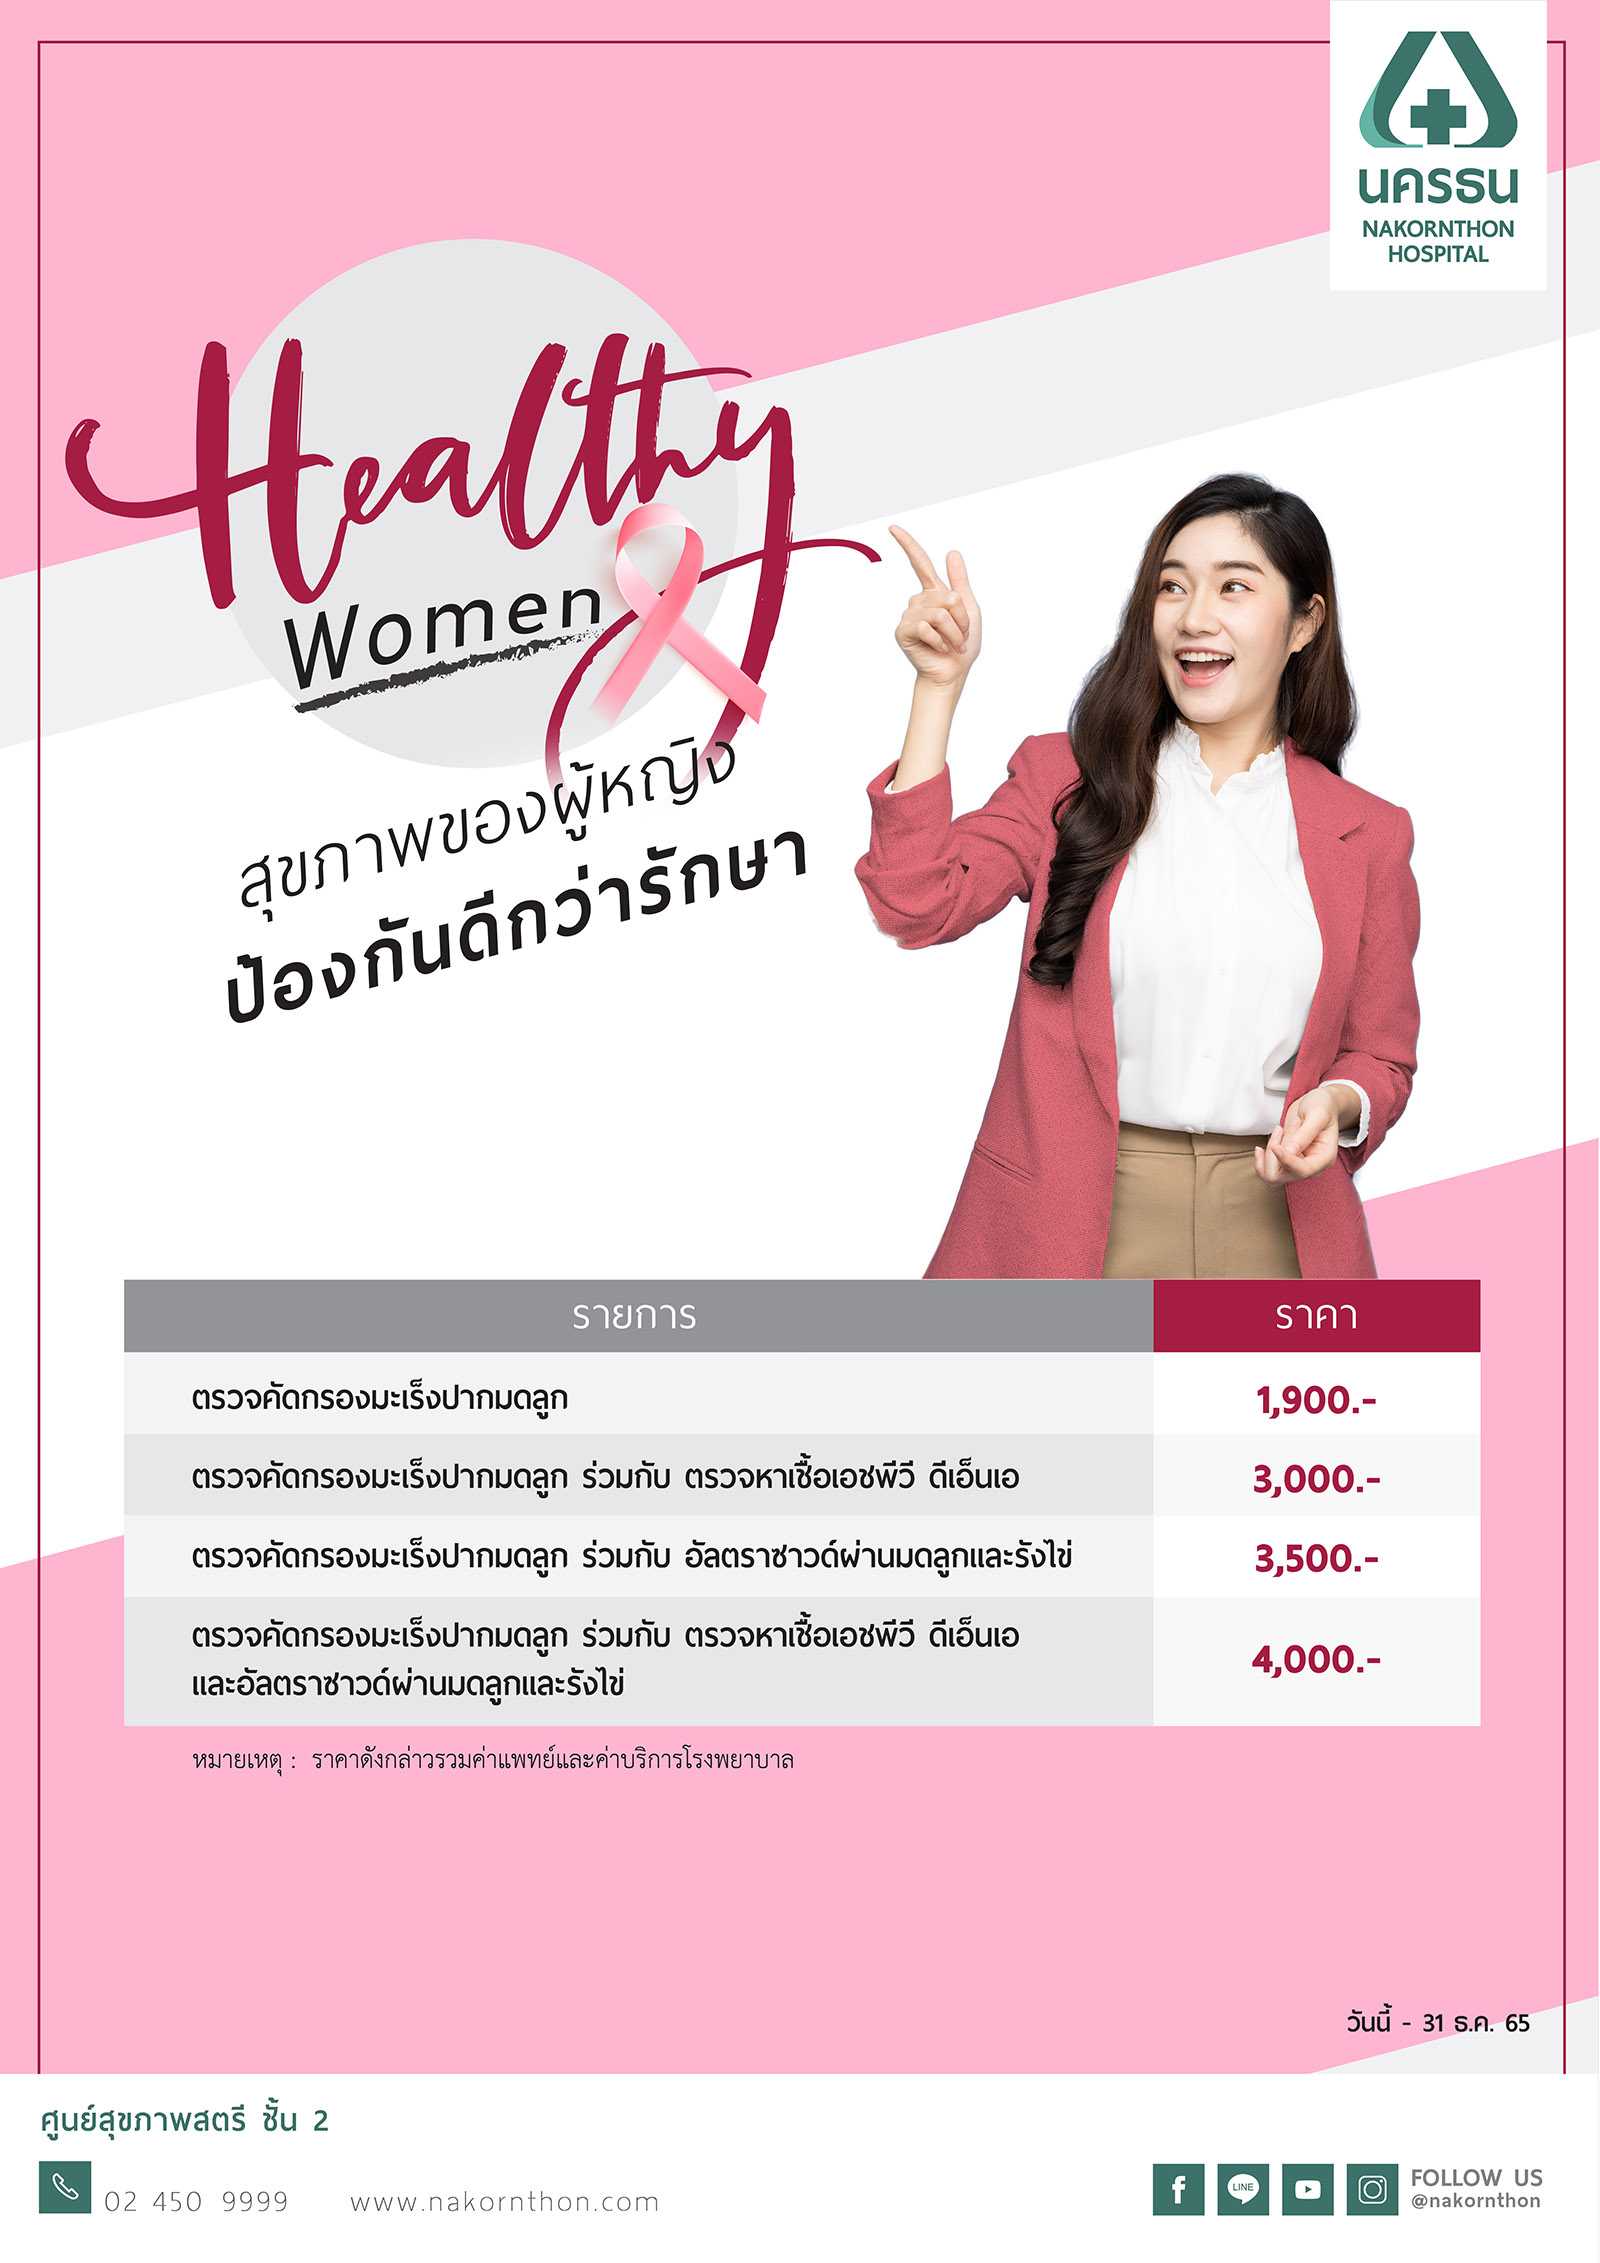 Healthy Women โปรแกรมตรวจสุขภาพสำหรับผู้หญิง